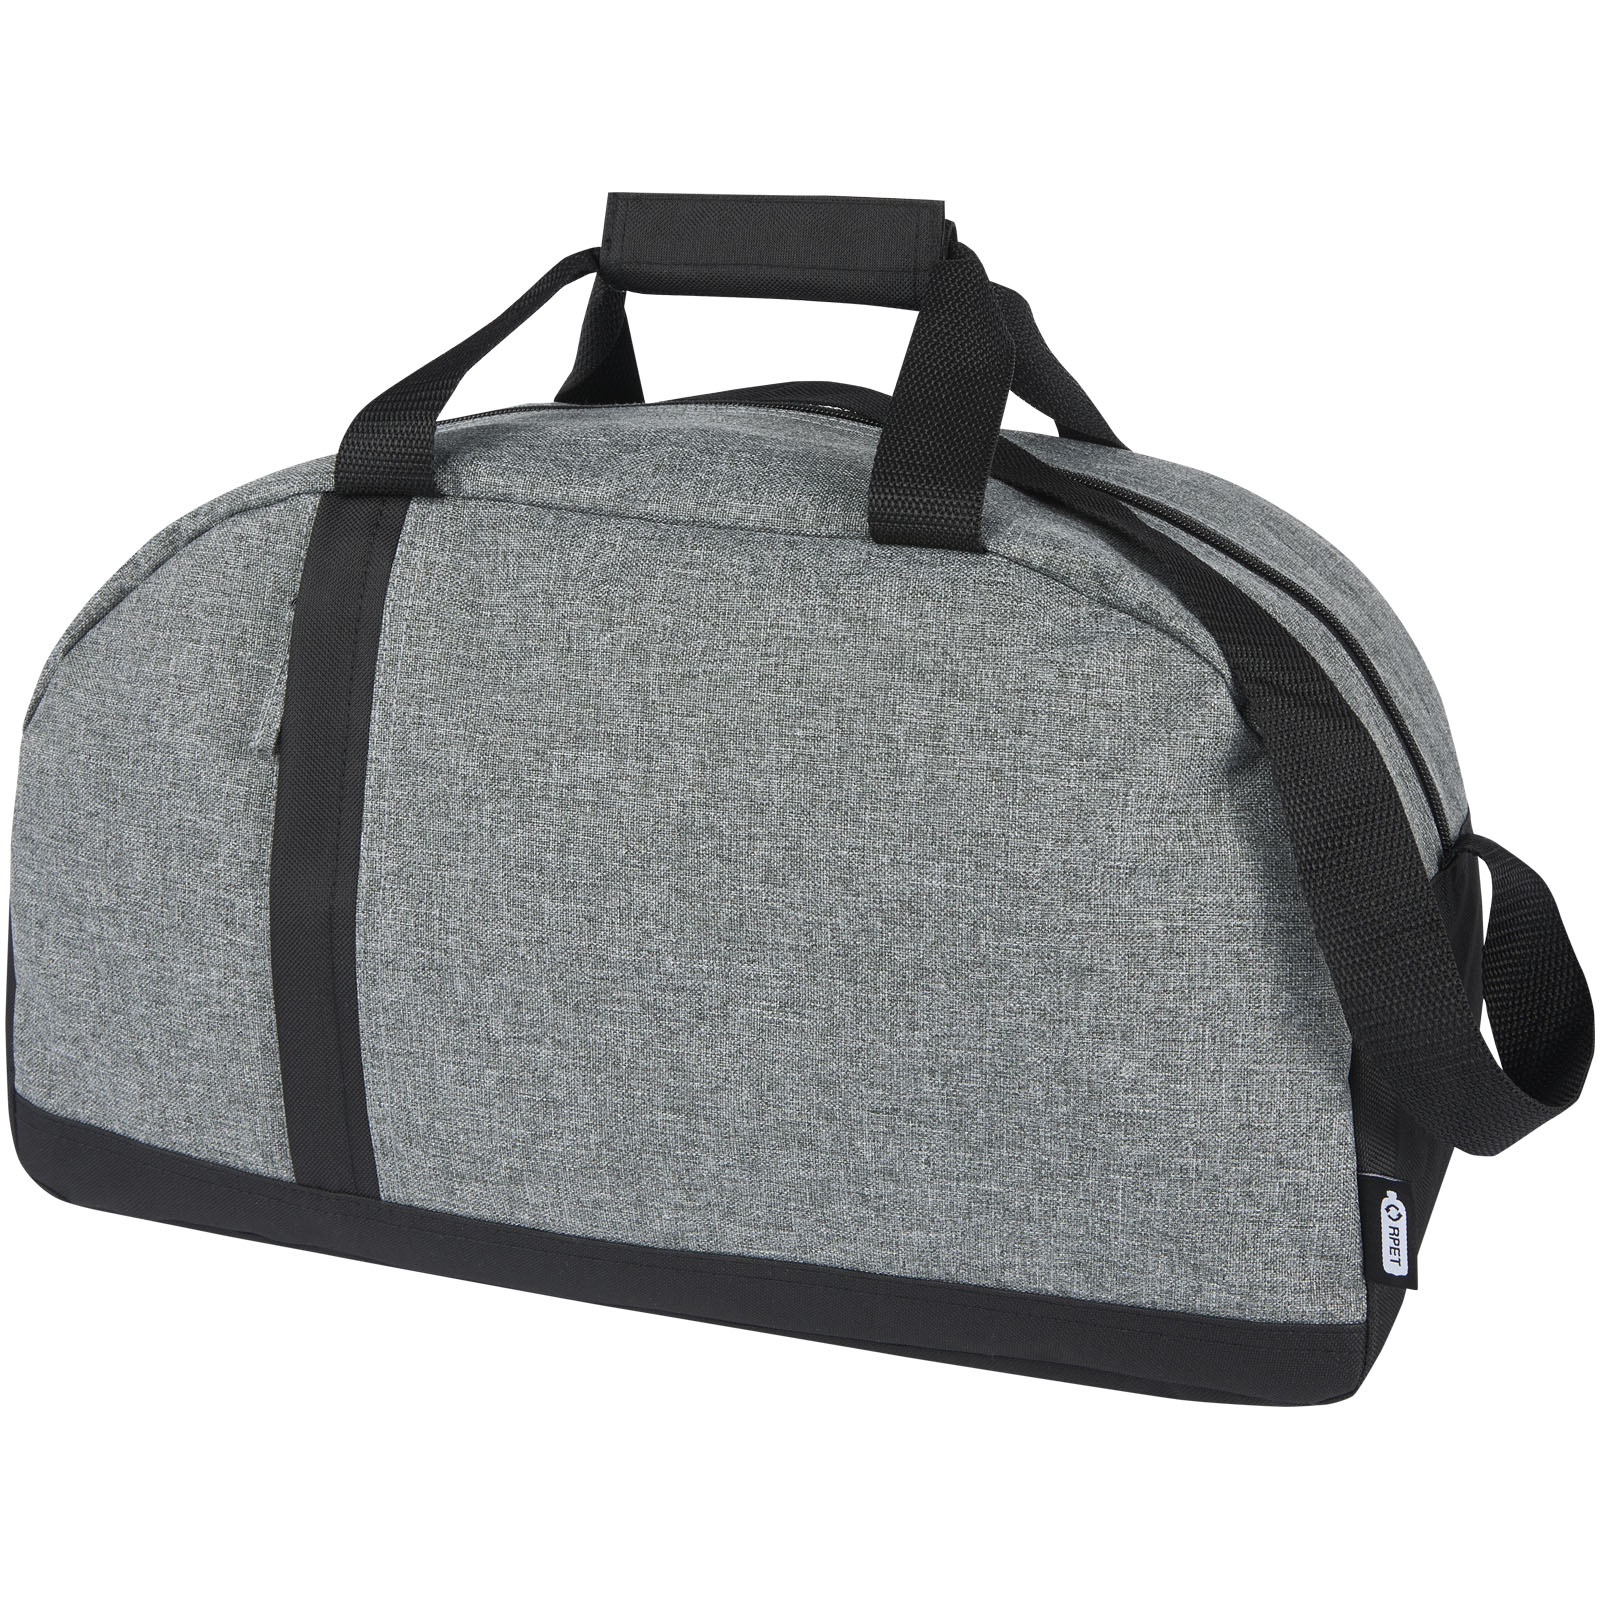 Sportovní taška z recyklovaných materiálů RECLAIM, 21 l - solid black / heather grey